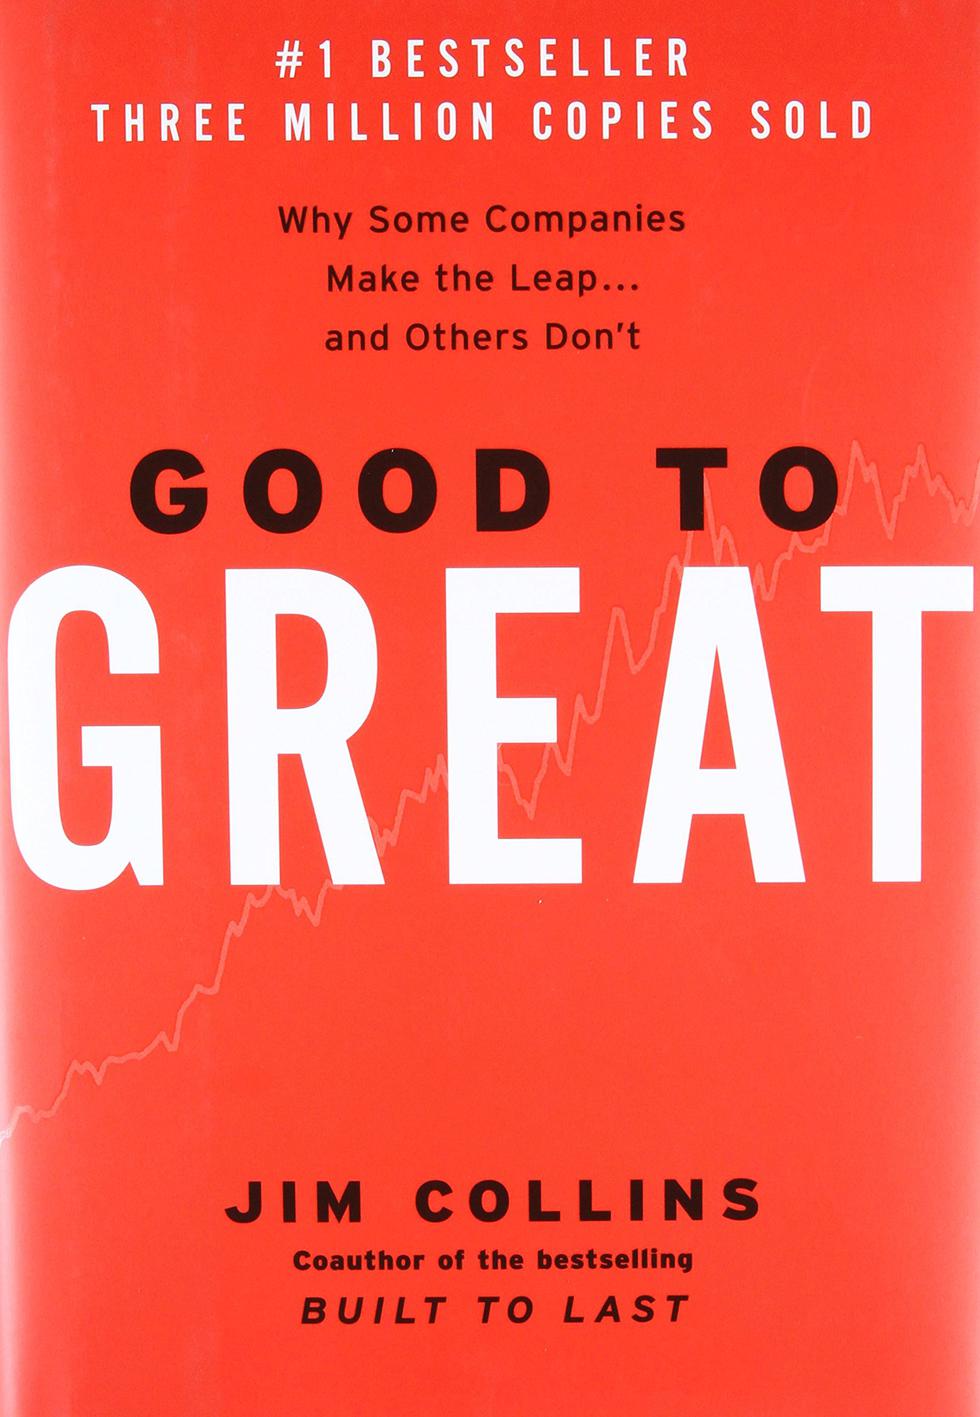 1.-Juan Carlos Mostajo: ‘Good to Great’ (Jim Collins)